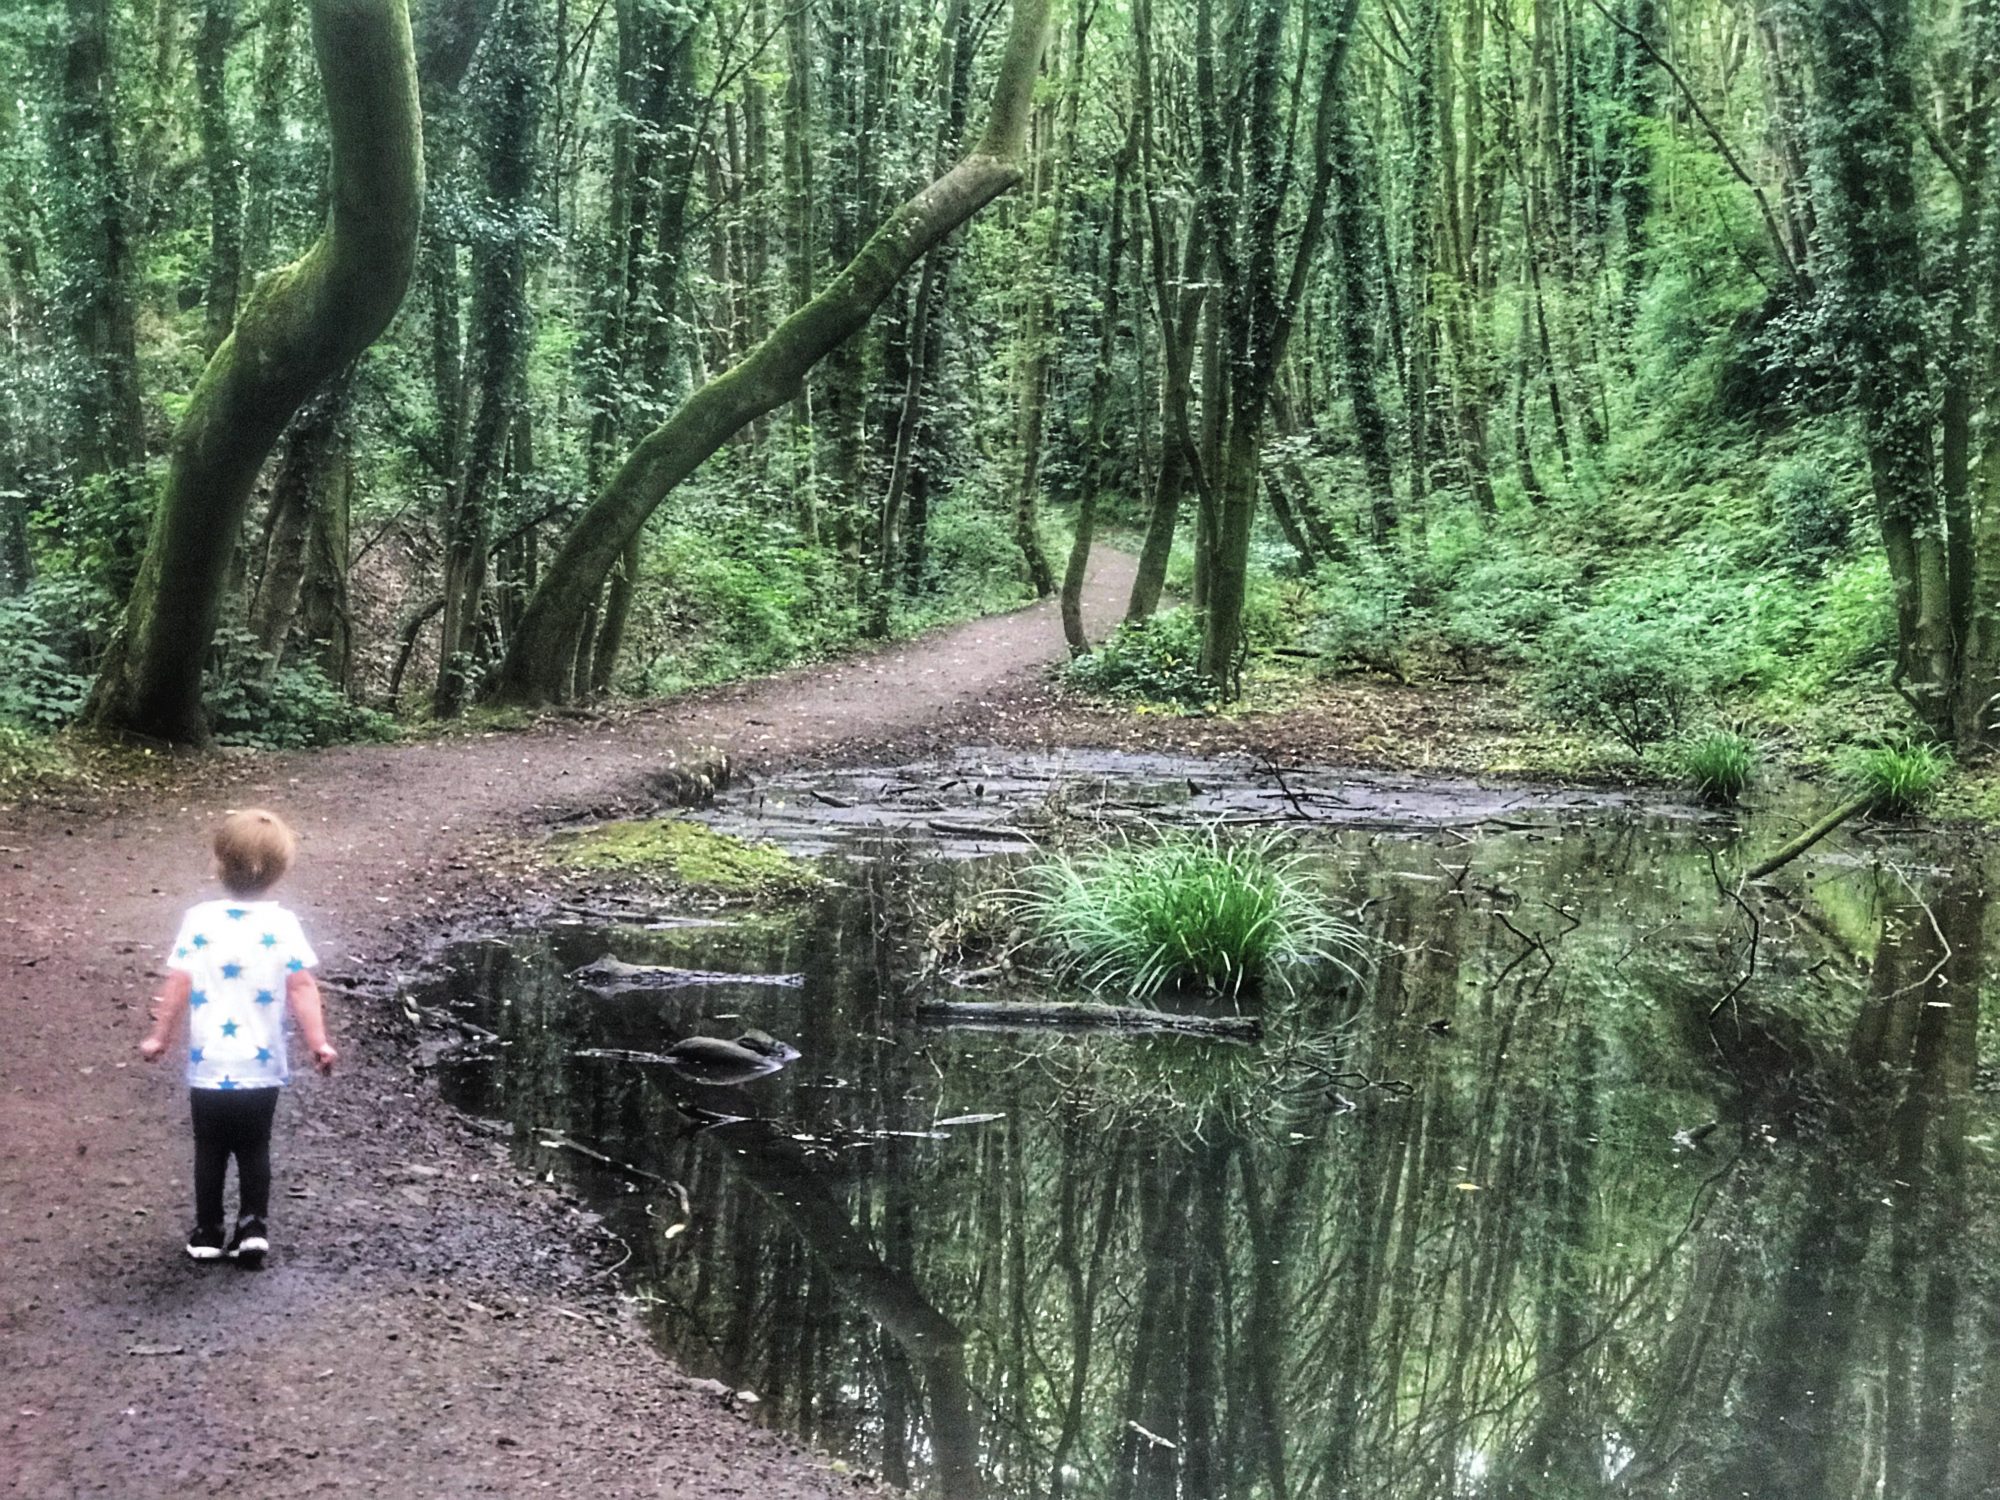 Dexter stood next to a pond in Fairy Glen, Parbold